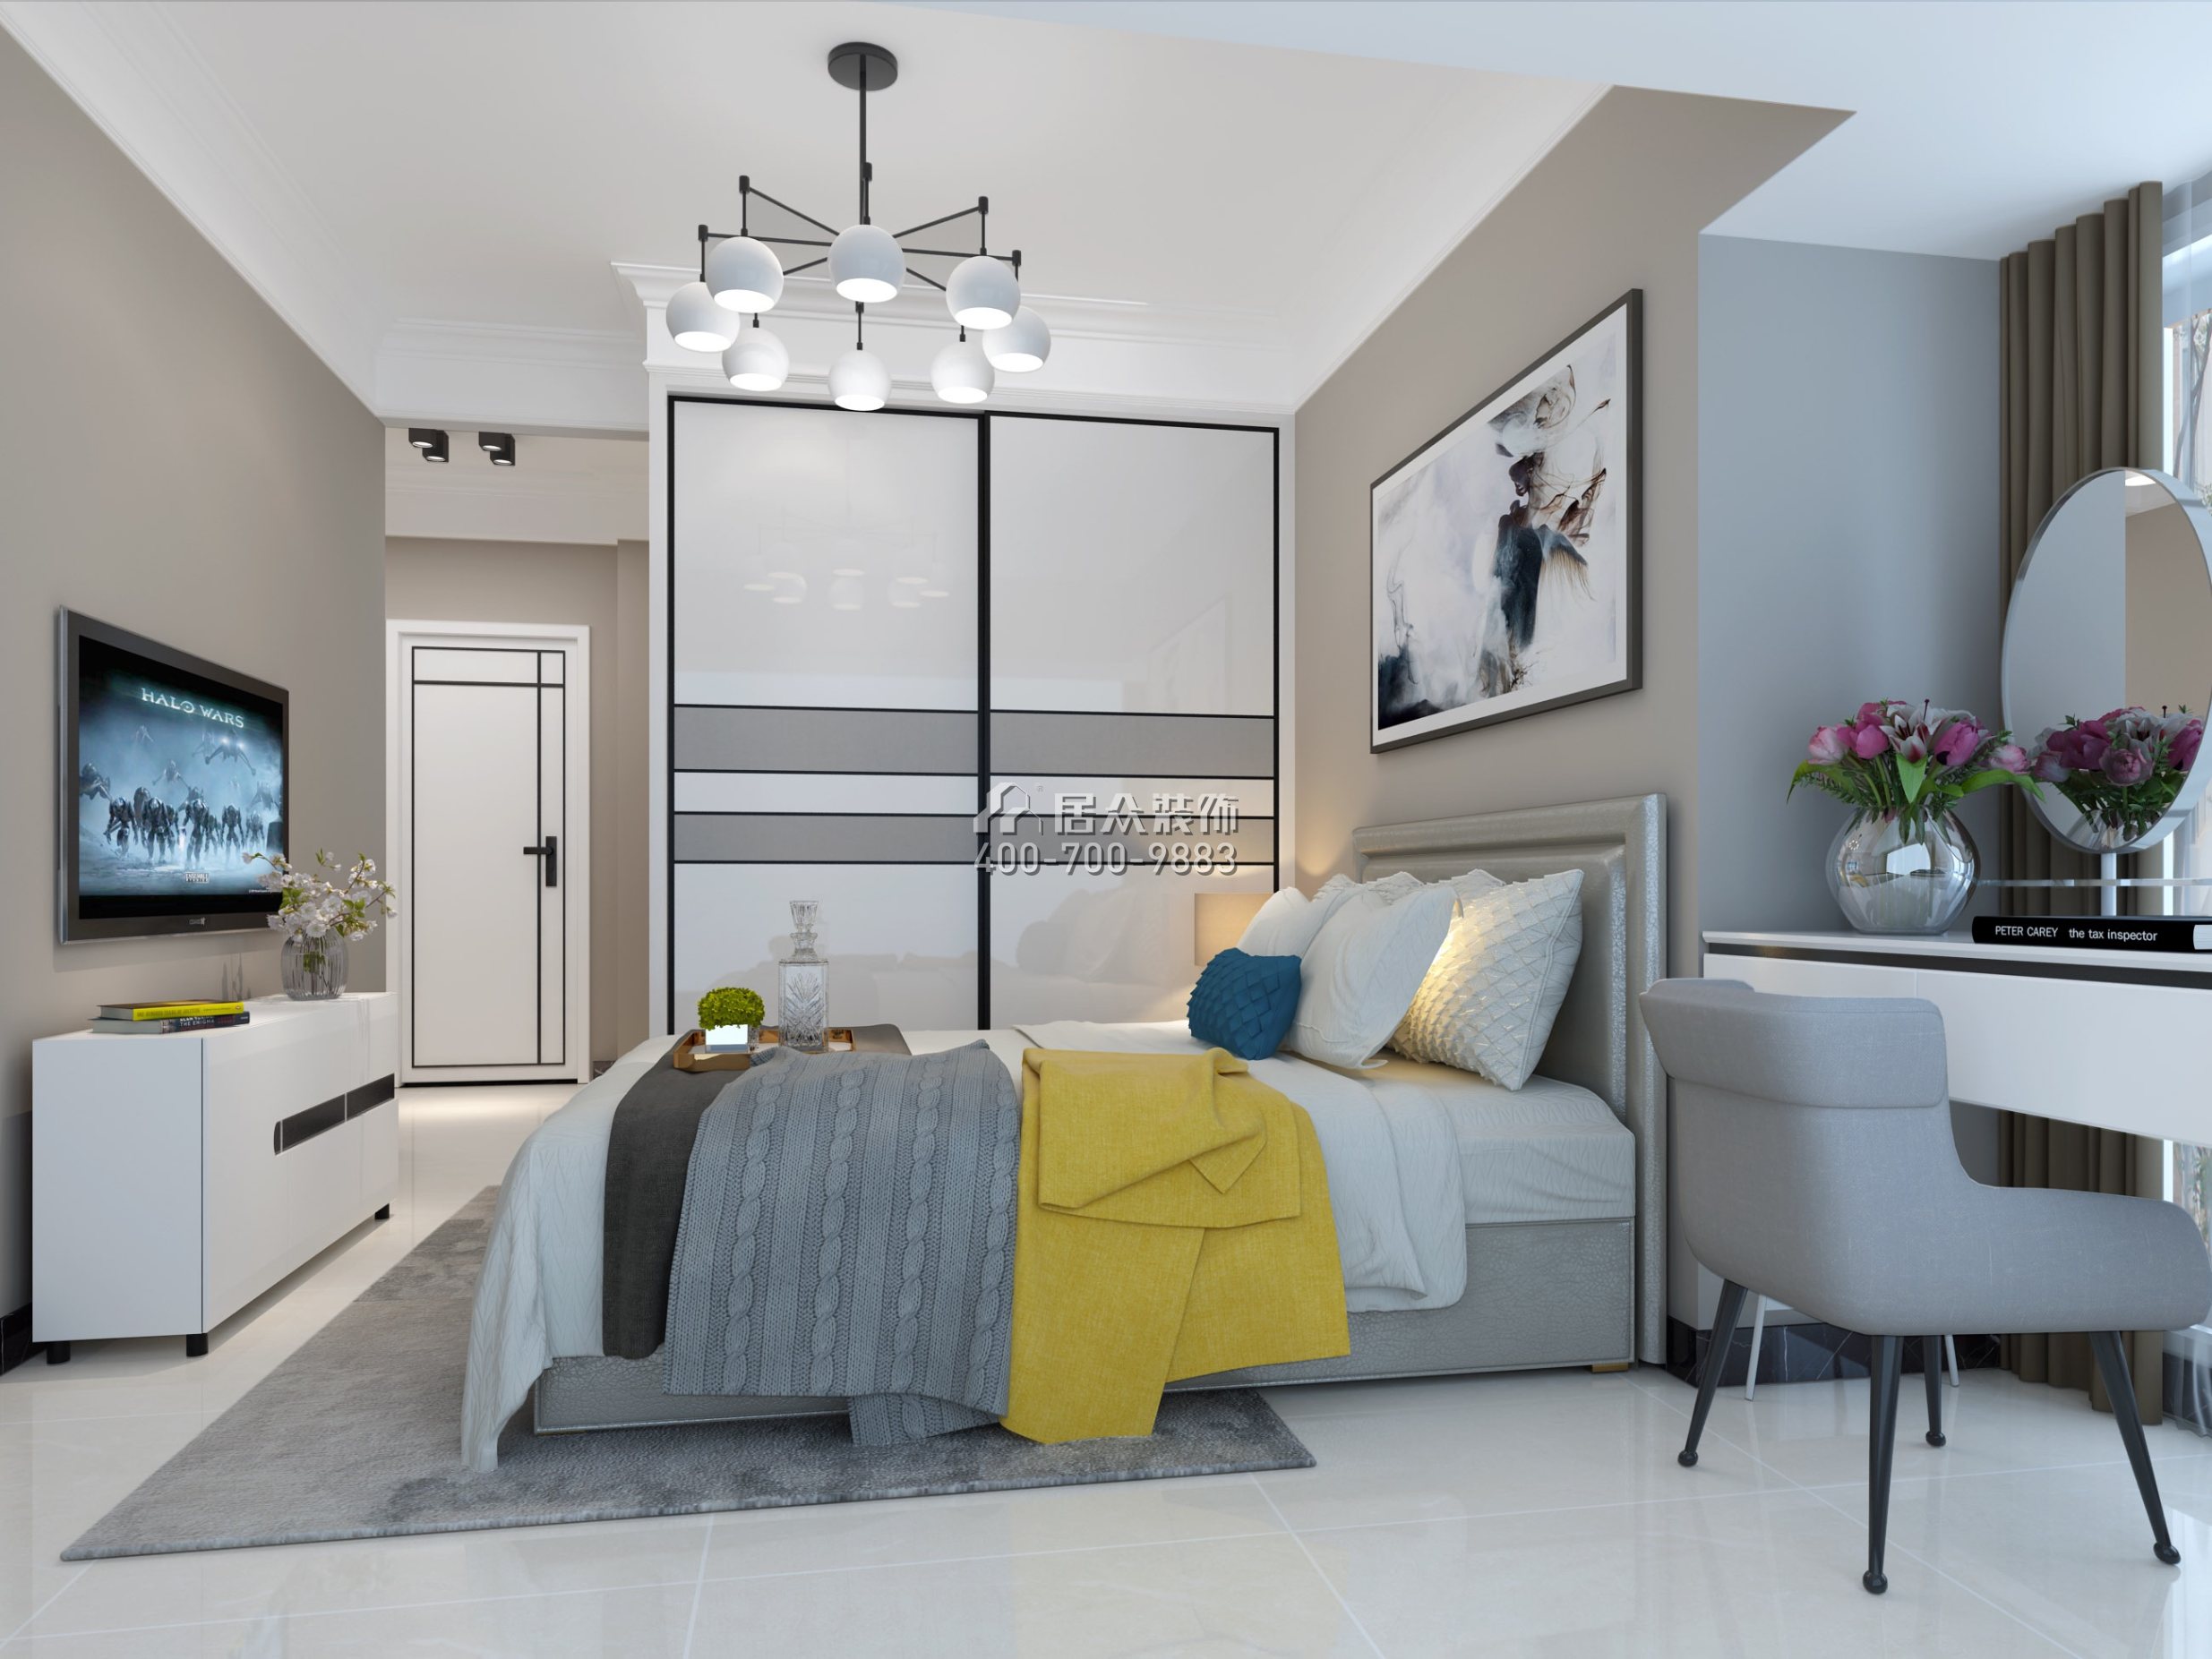 西荟城110平方米现代简约风格平层户型卧室装修效果图